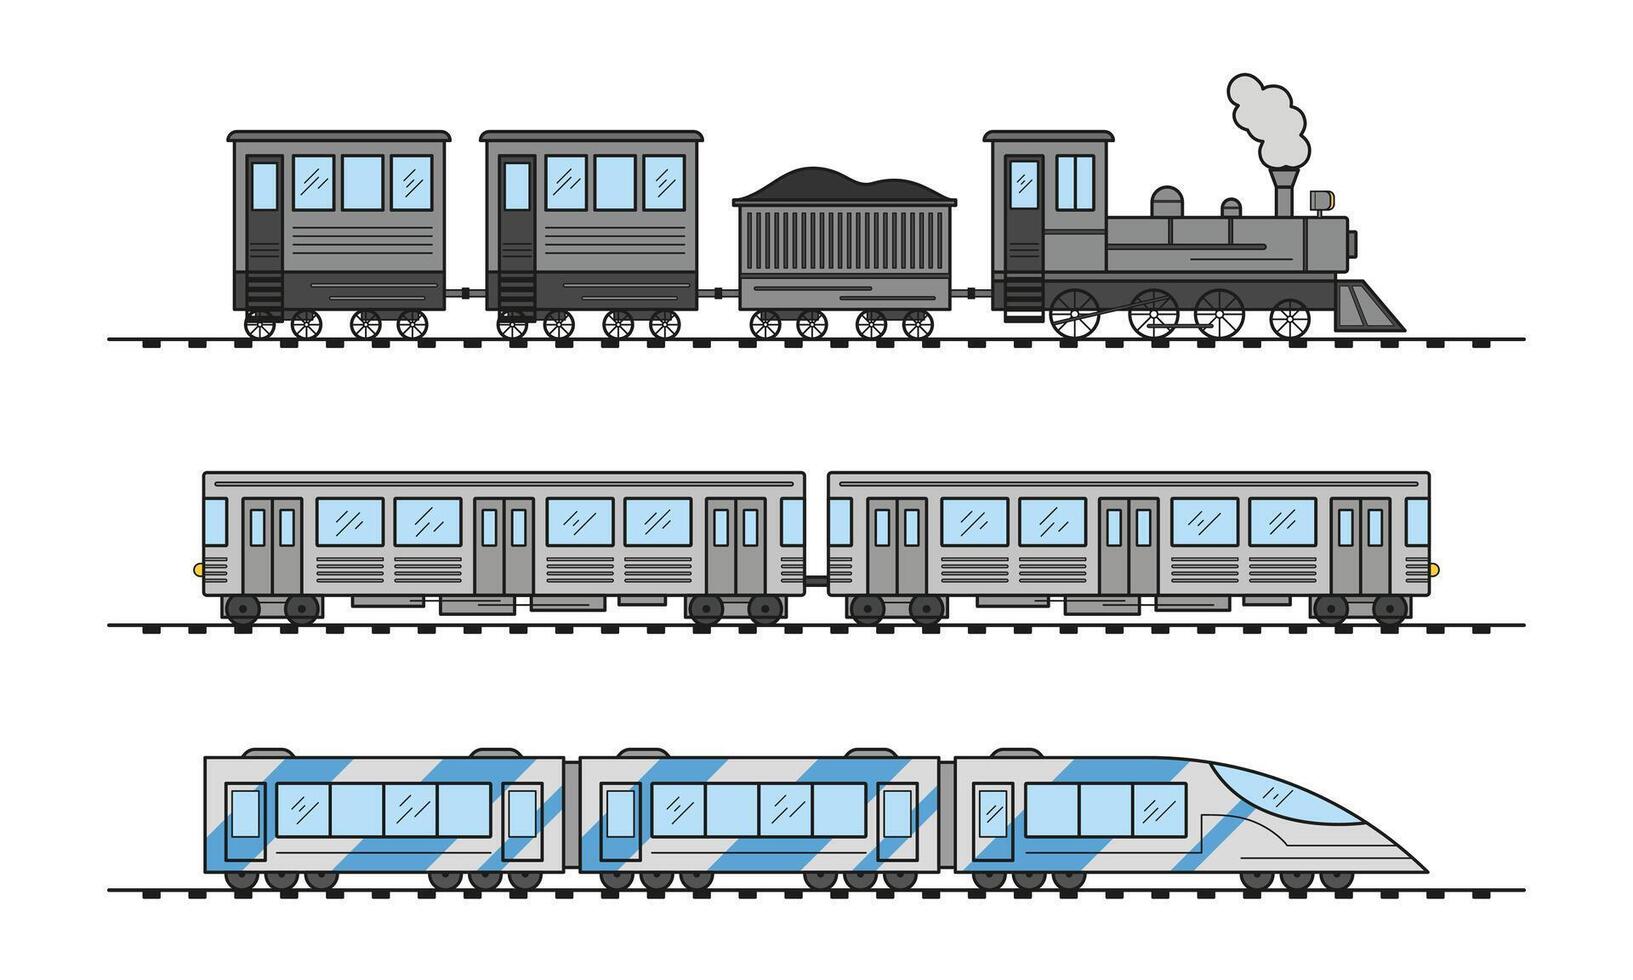 moderno y Clásico tren recopilación. antiguo y eléctrico alta velocidad pasajero trenes ferrocarril viaje y ferrocarril turismo. subterraneo transporte subterráneo tren. vector